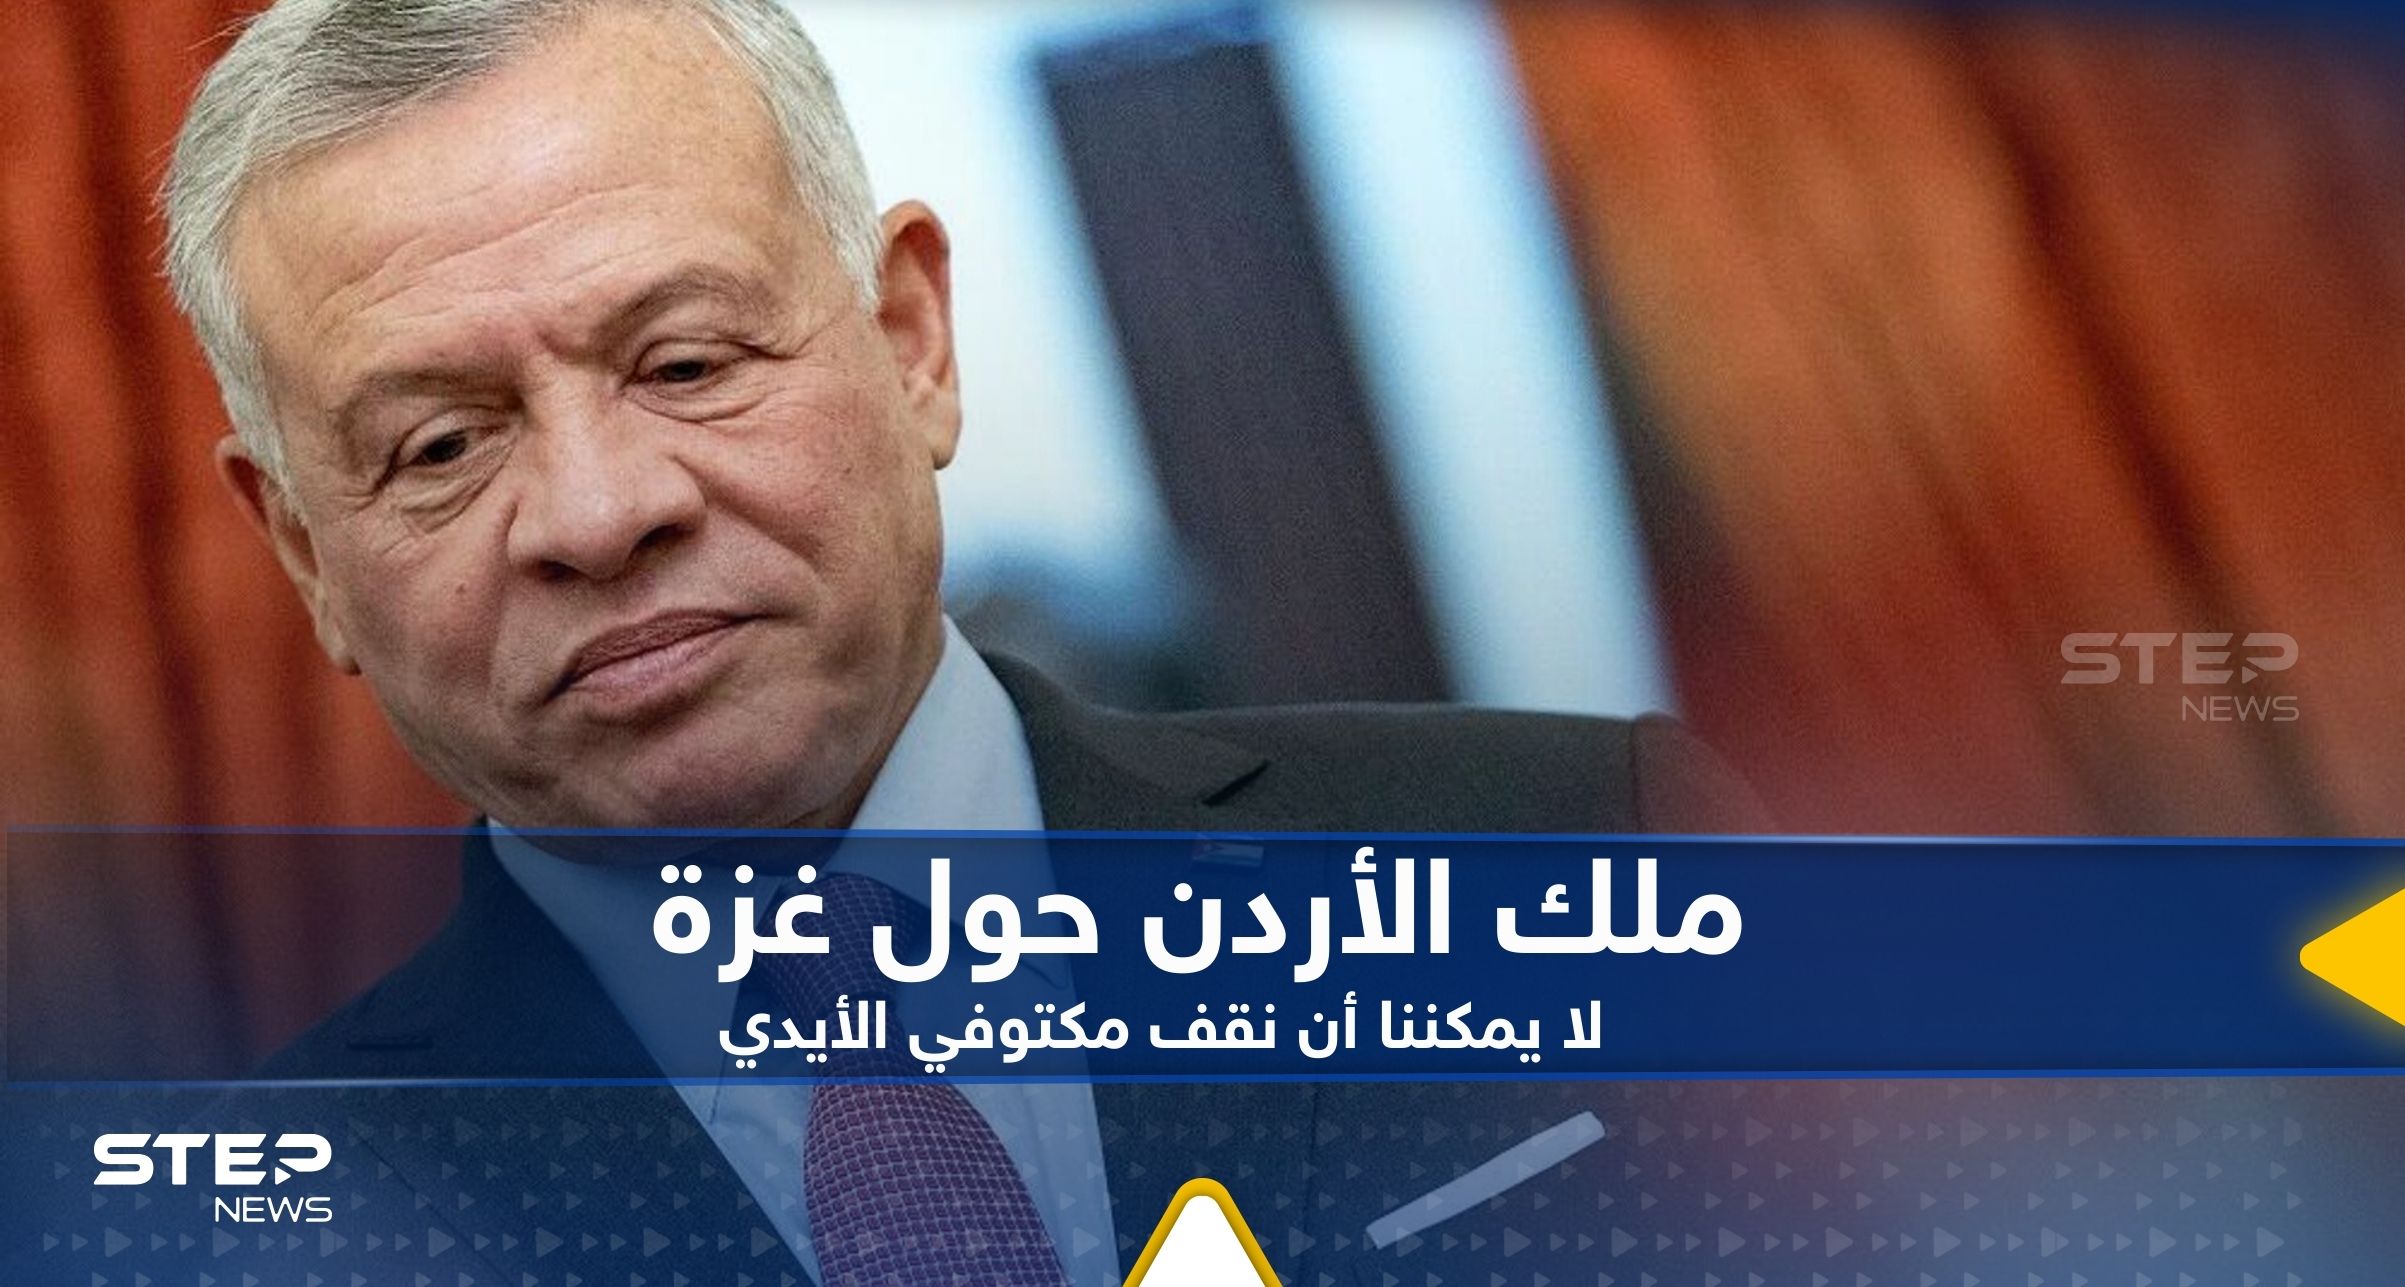 ملك الأردن يعلق على عودة القصف الإسرائيلي على غزة: لا يمكننا أن نقف مكتوفي الأيدي